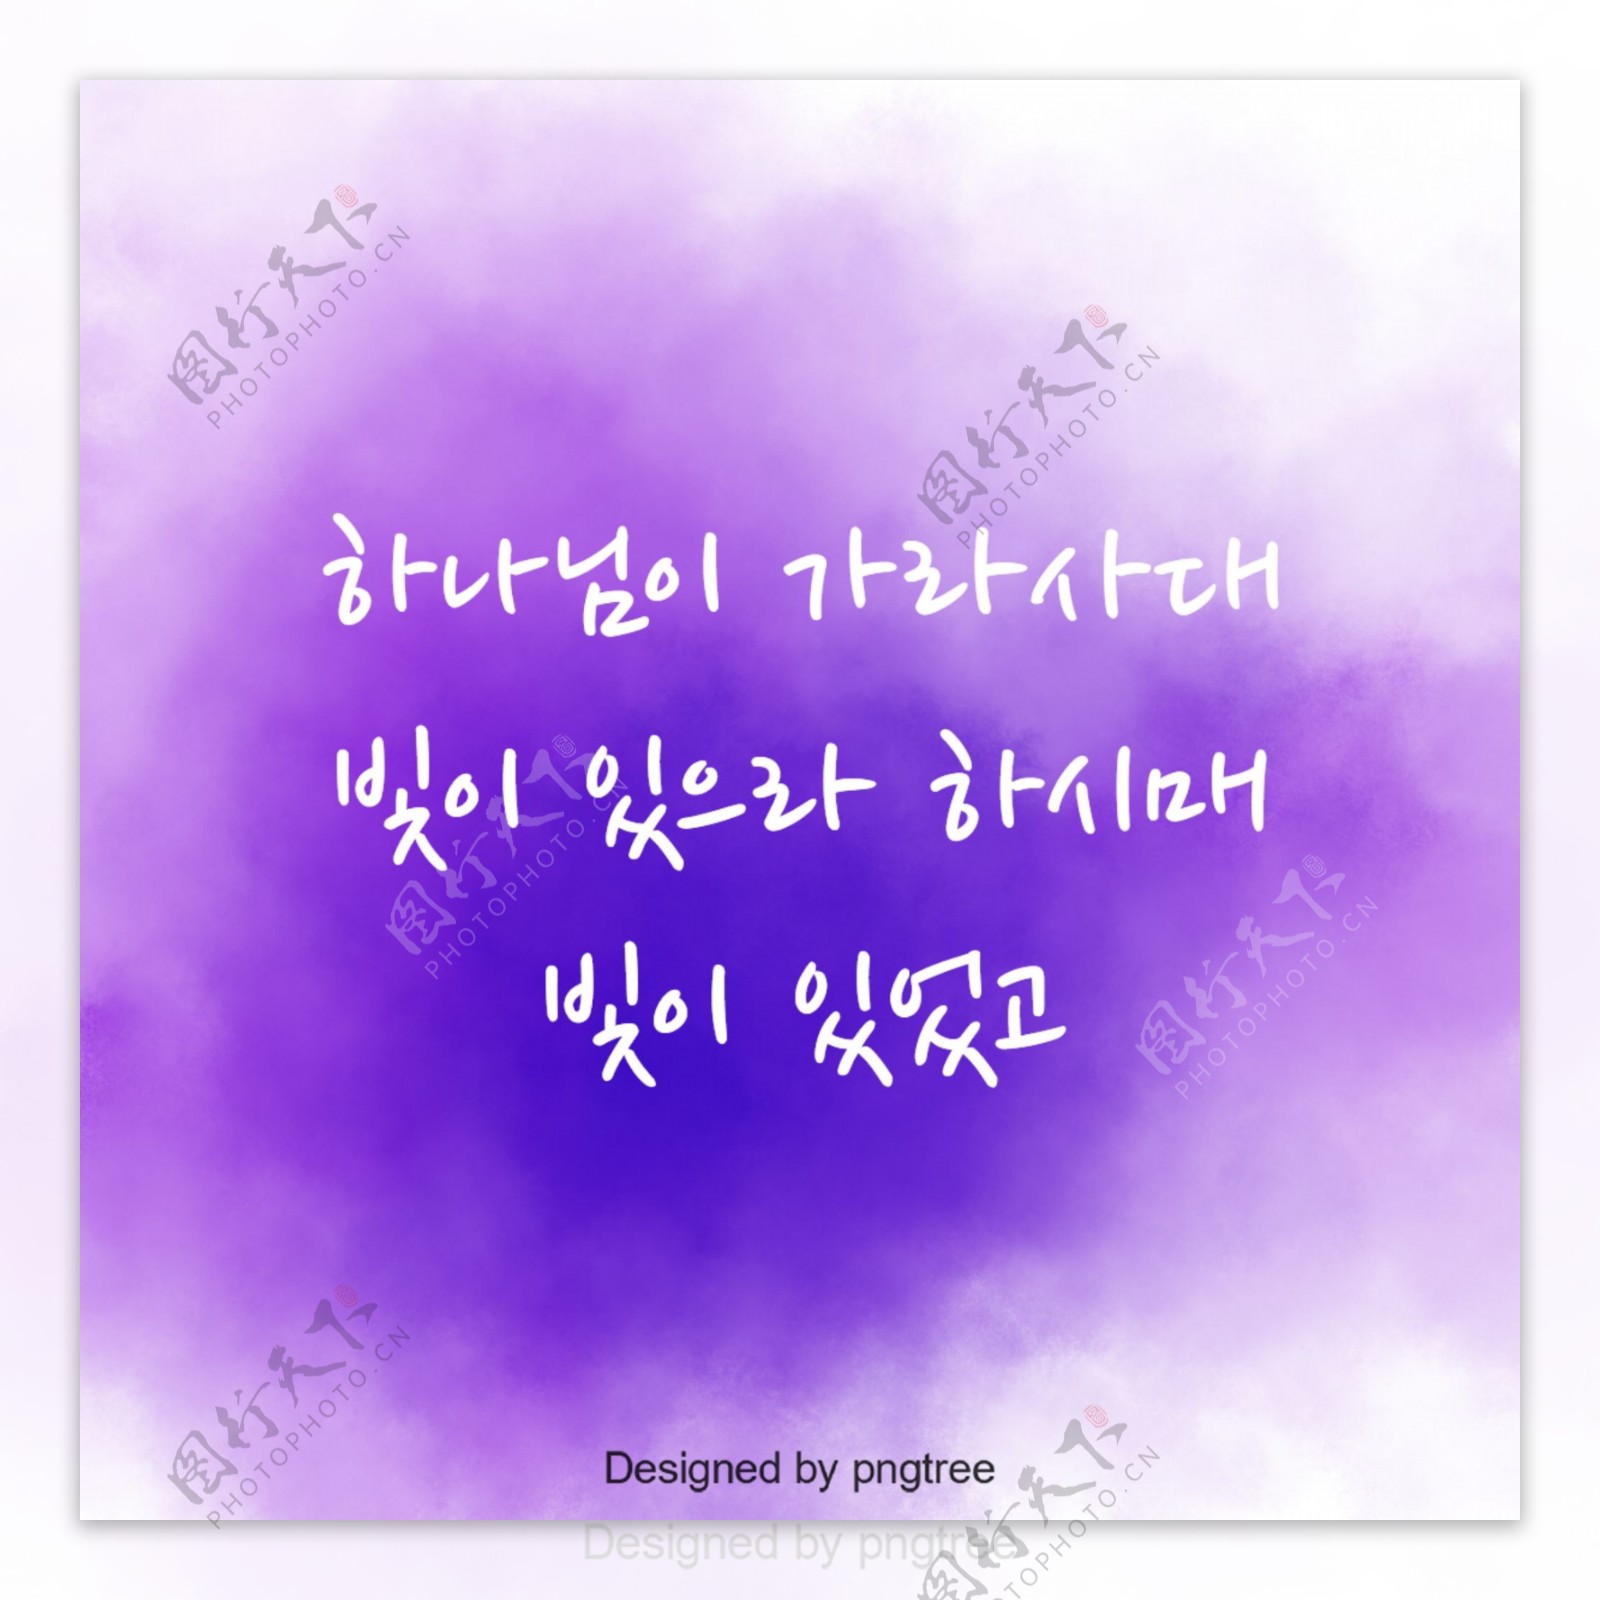 圣经的字符紫色水彩背景